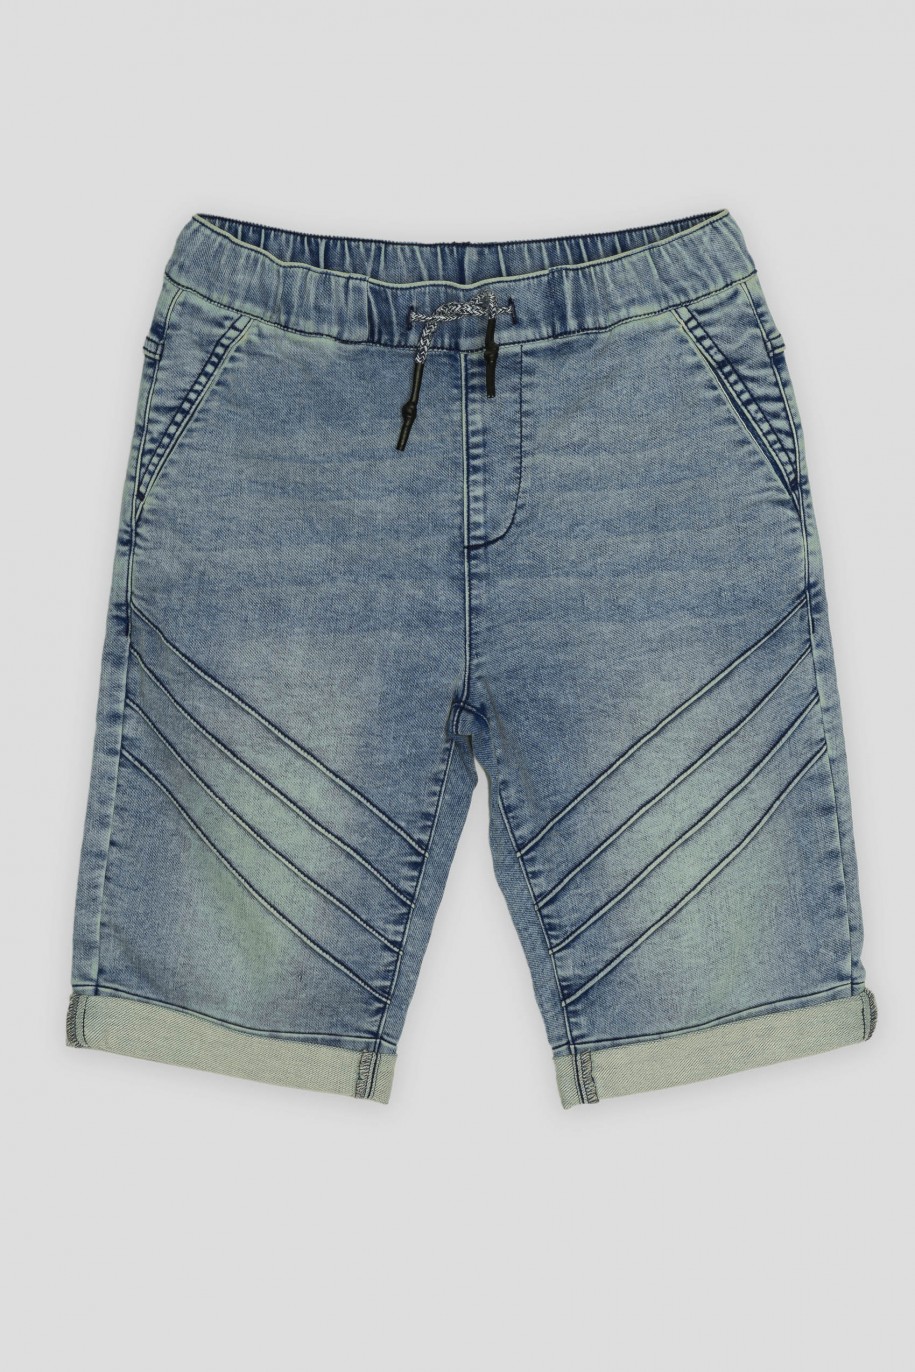 Niebieskie jeansowe krótkie spodenki na gumce - 42621